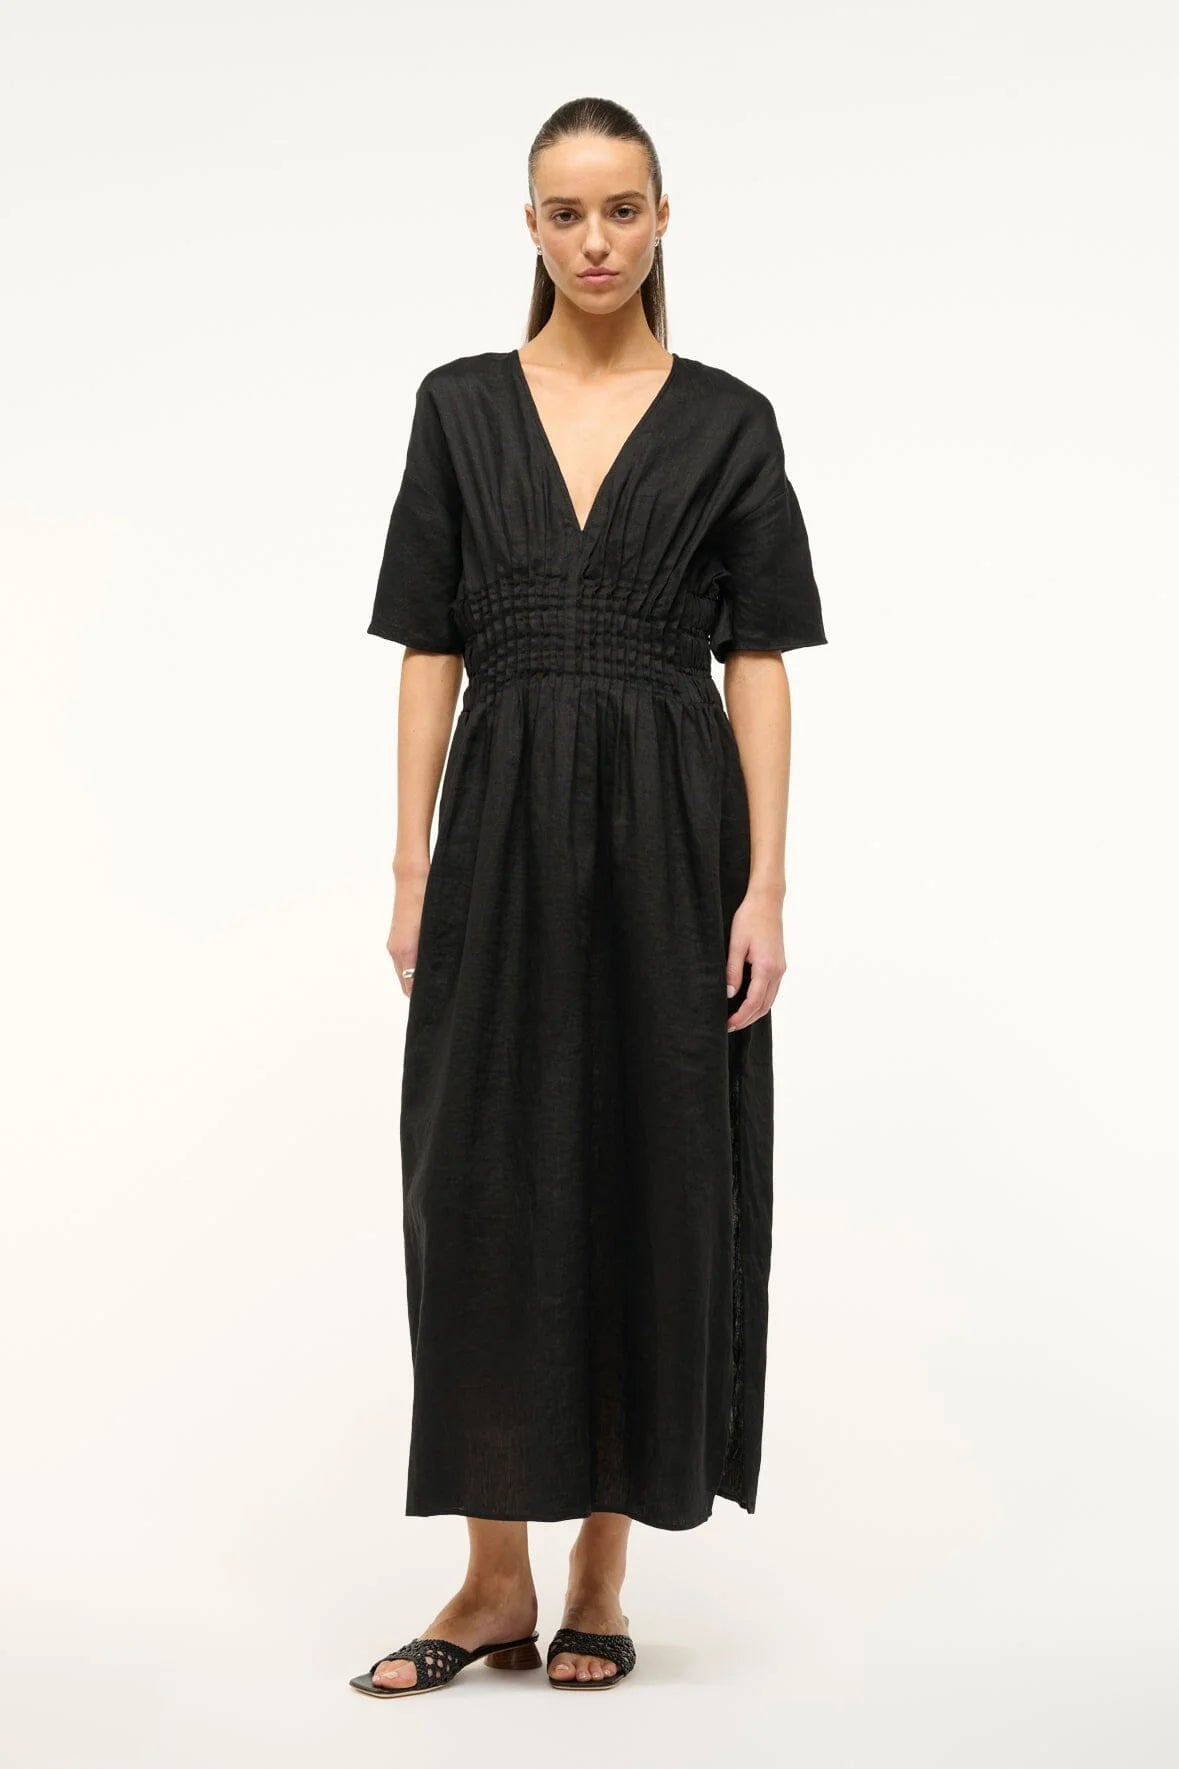 LAURETTA DRESS IN BLACK - Romi Boutique